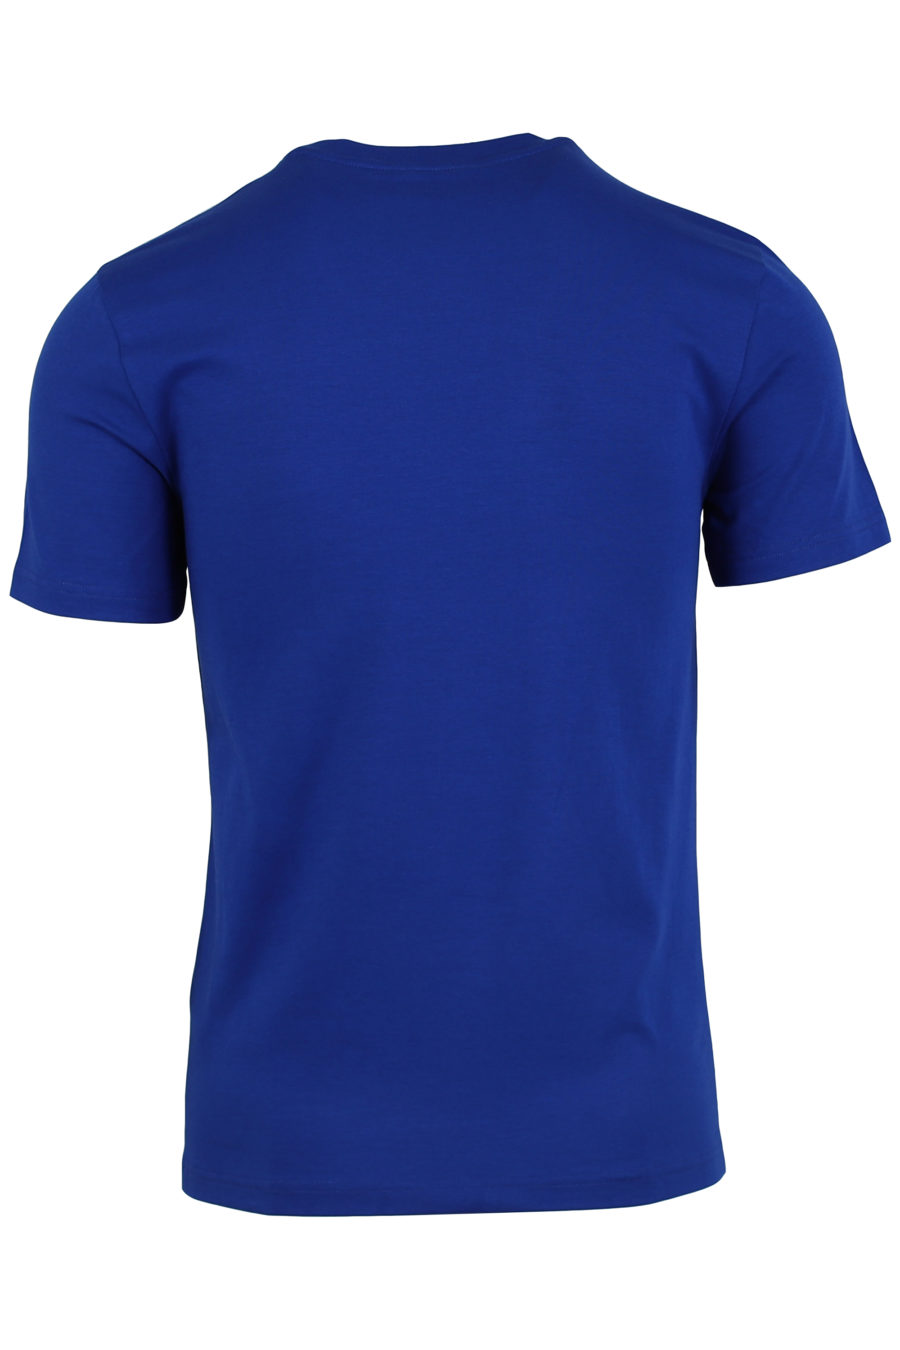 T-Shirt mit blauem Logo in Goldfarbe - IMG 0920